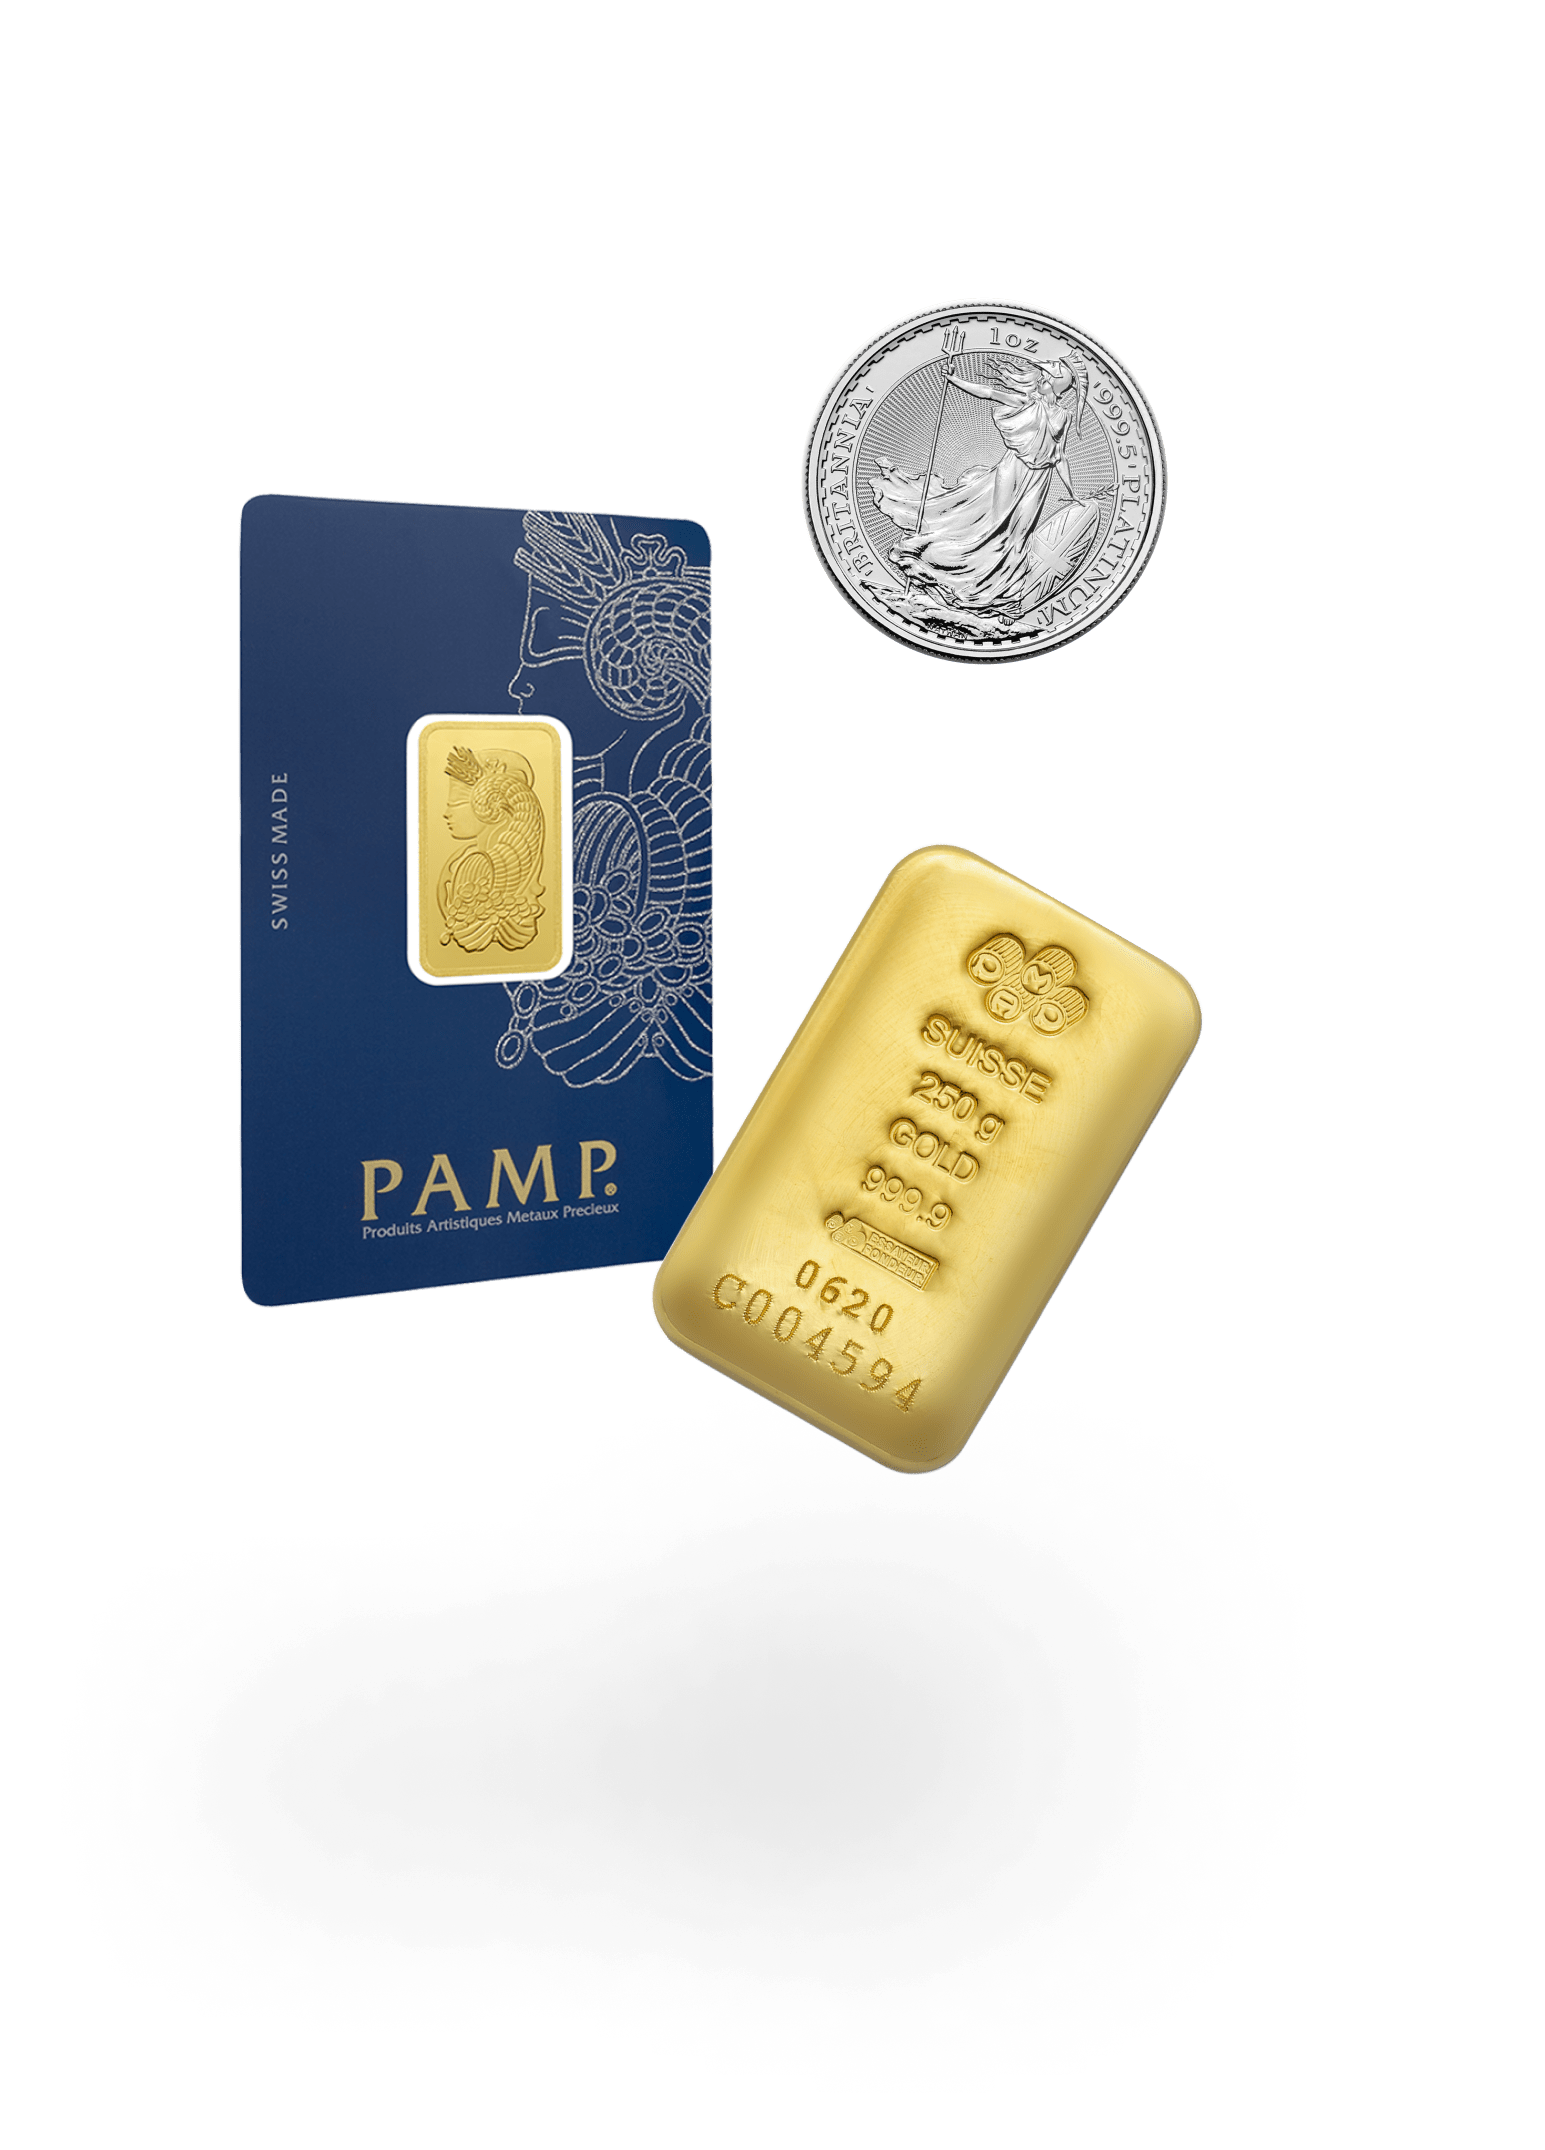 acheter des pièces et des lingots d'or auprès de PAMP et des monnaies réputées sur l'assistant d'épargne, comme un lingot d'or de 1 kg, une pièce britannia de 1 oz ou un lingot d'or lady fortuna de 5 g